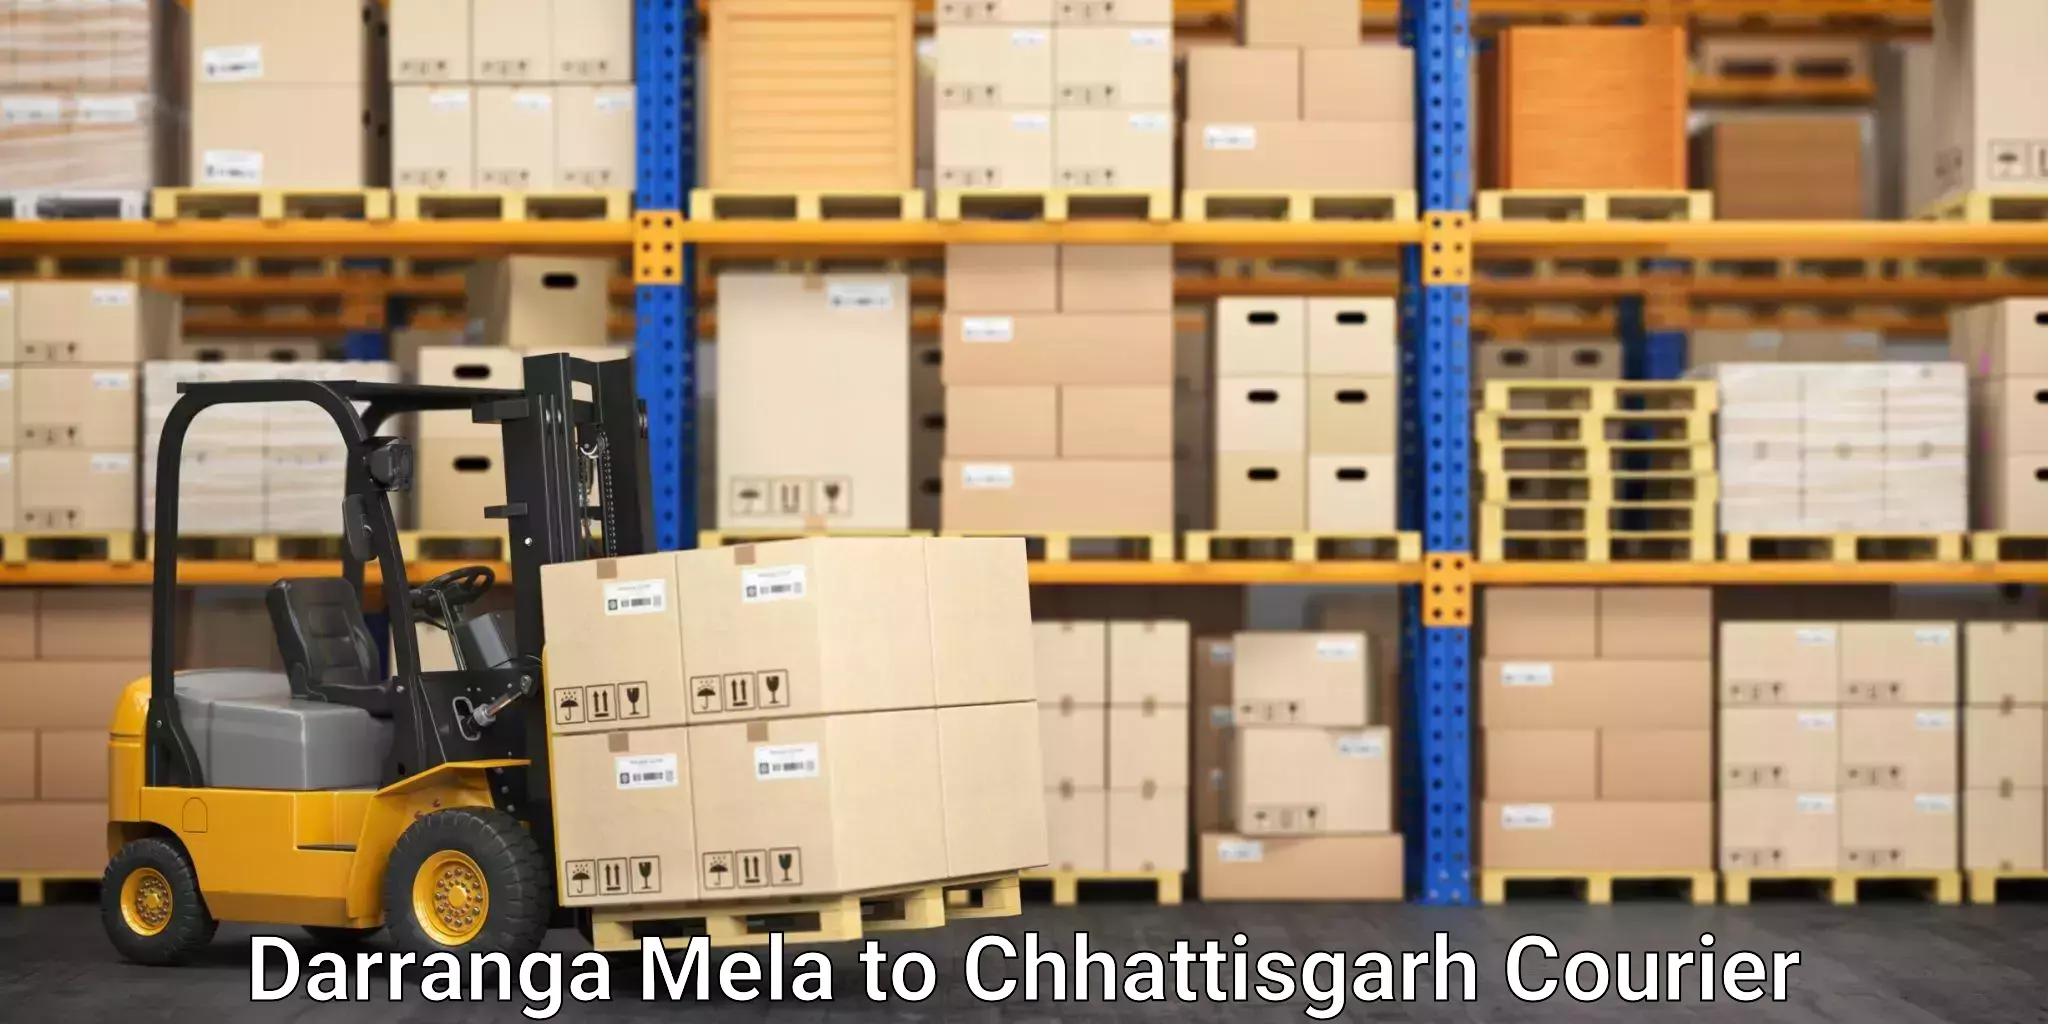 Urgent courier needs Darranga Mela to Premnagar